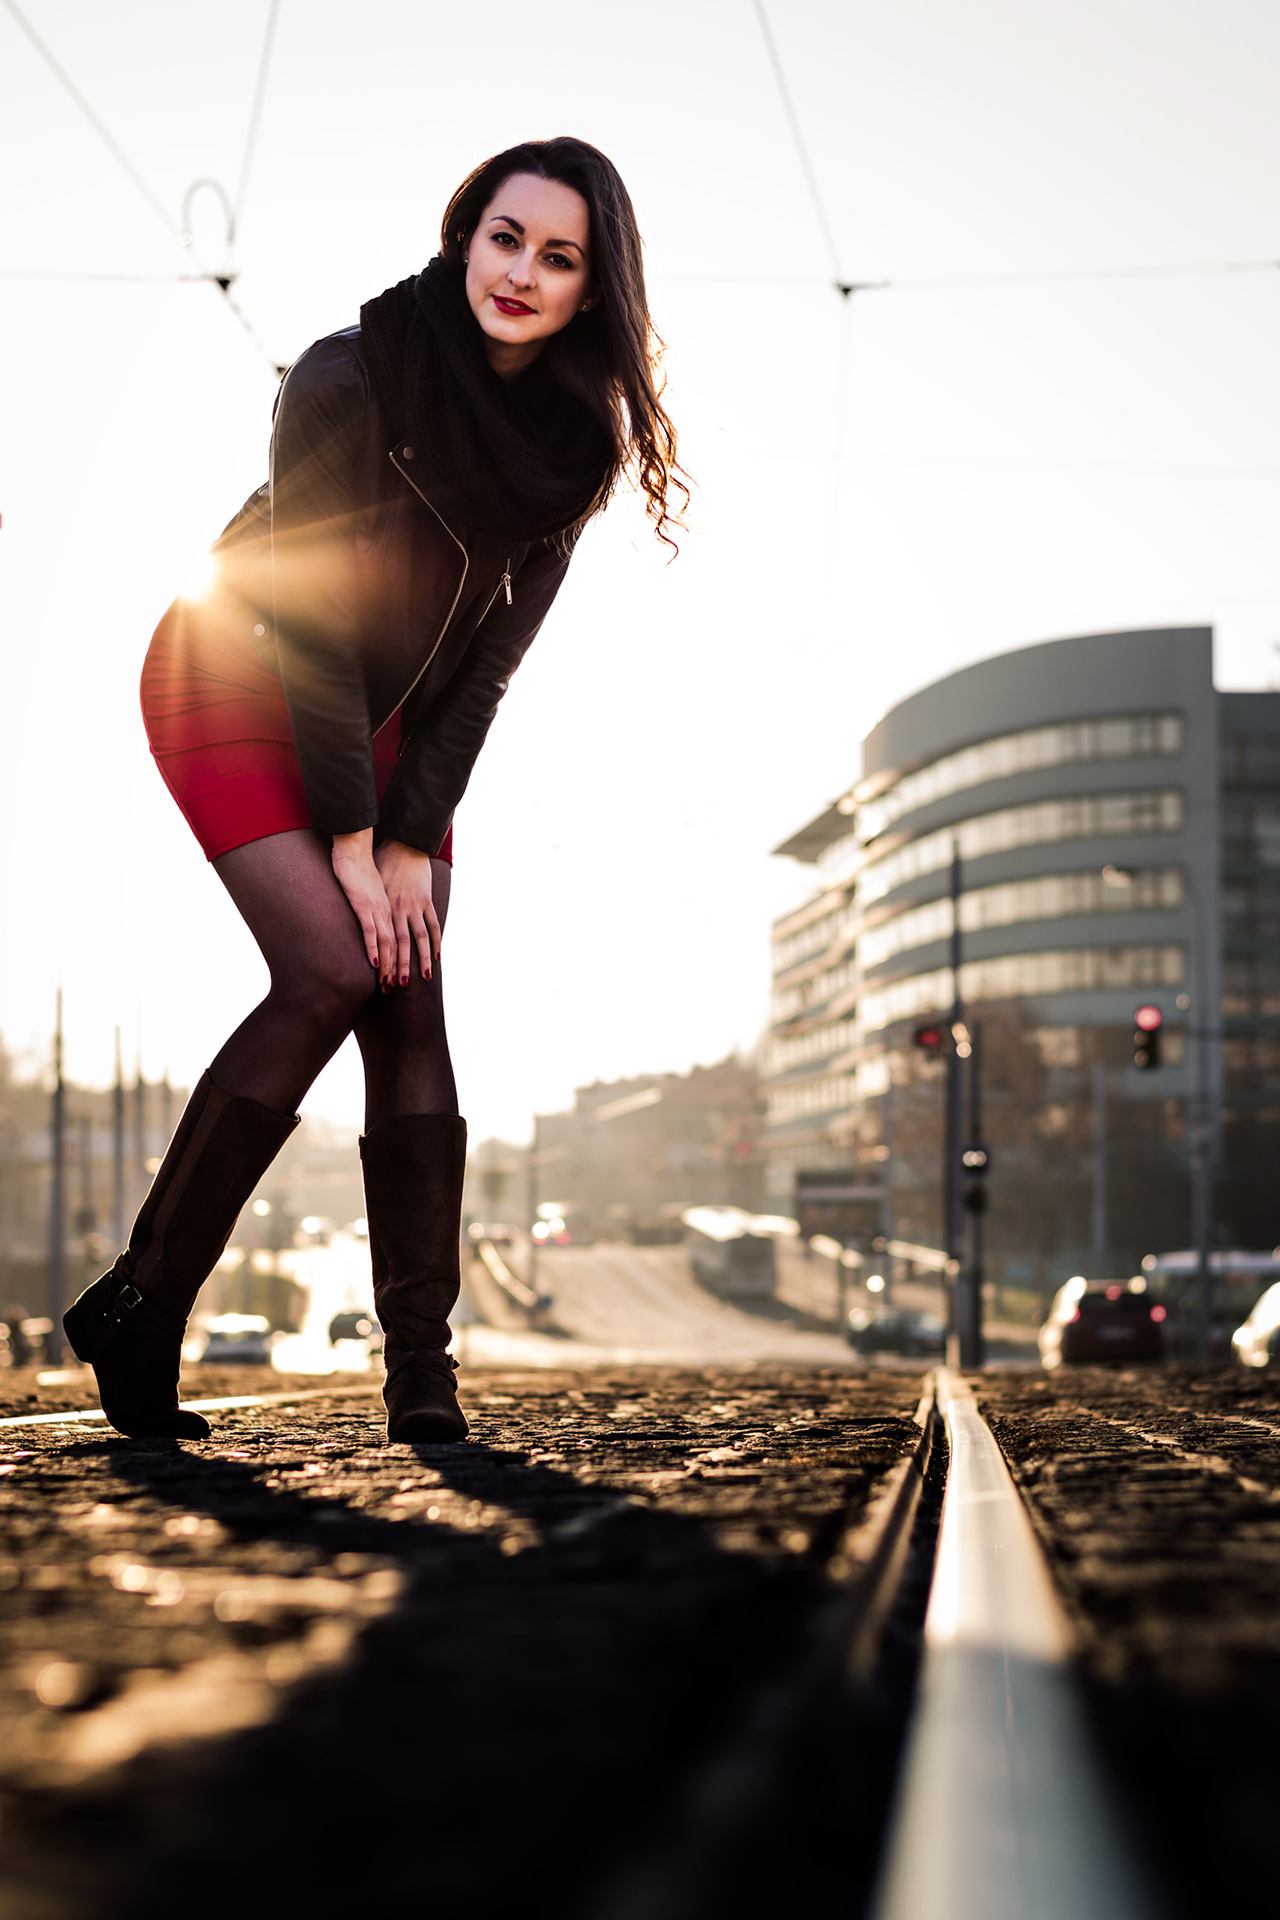 Full body photo of a female model posing on tram rails against the sunset.